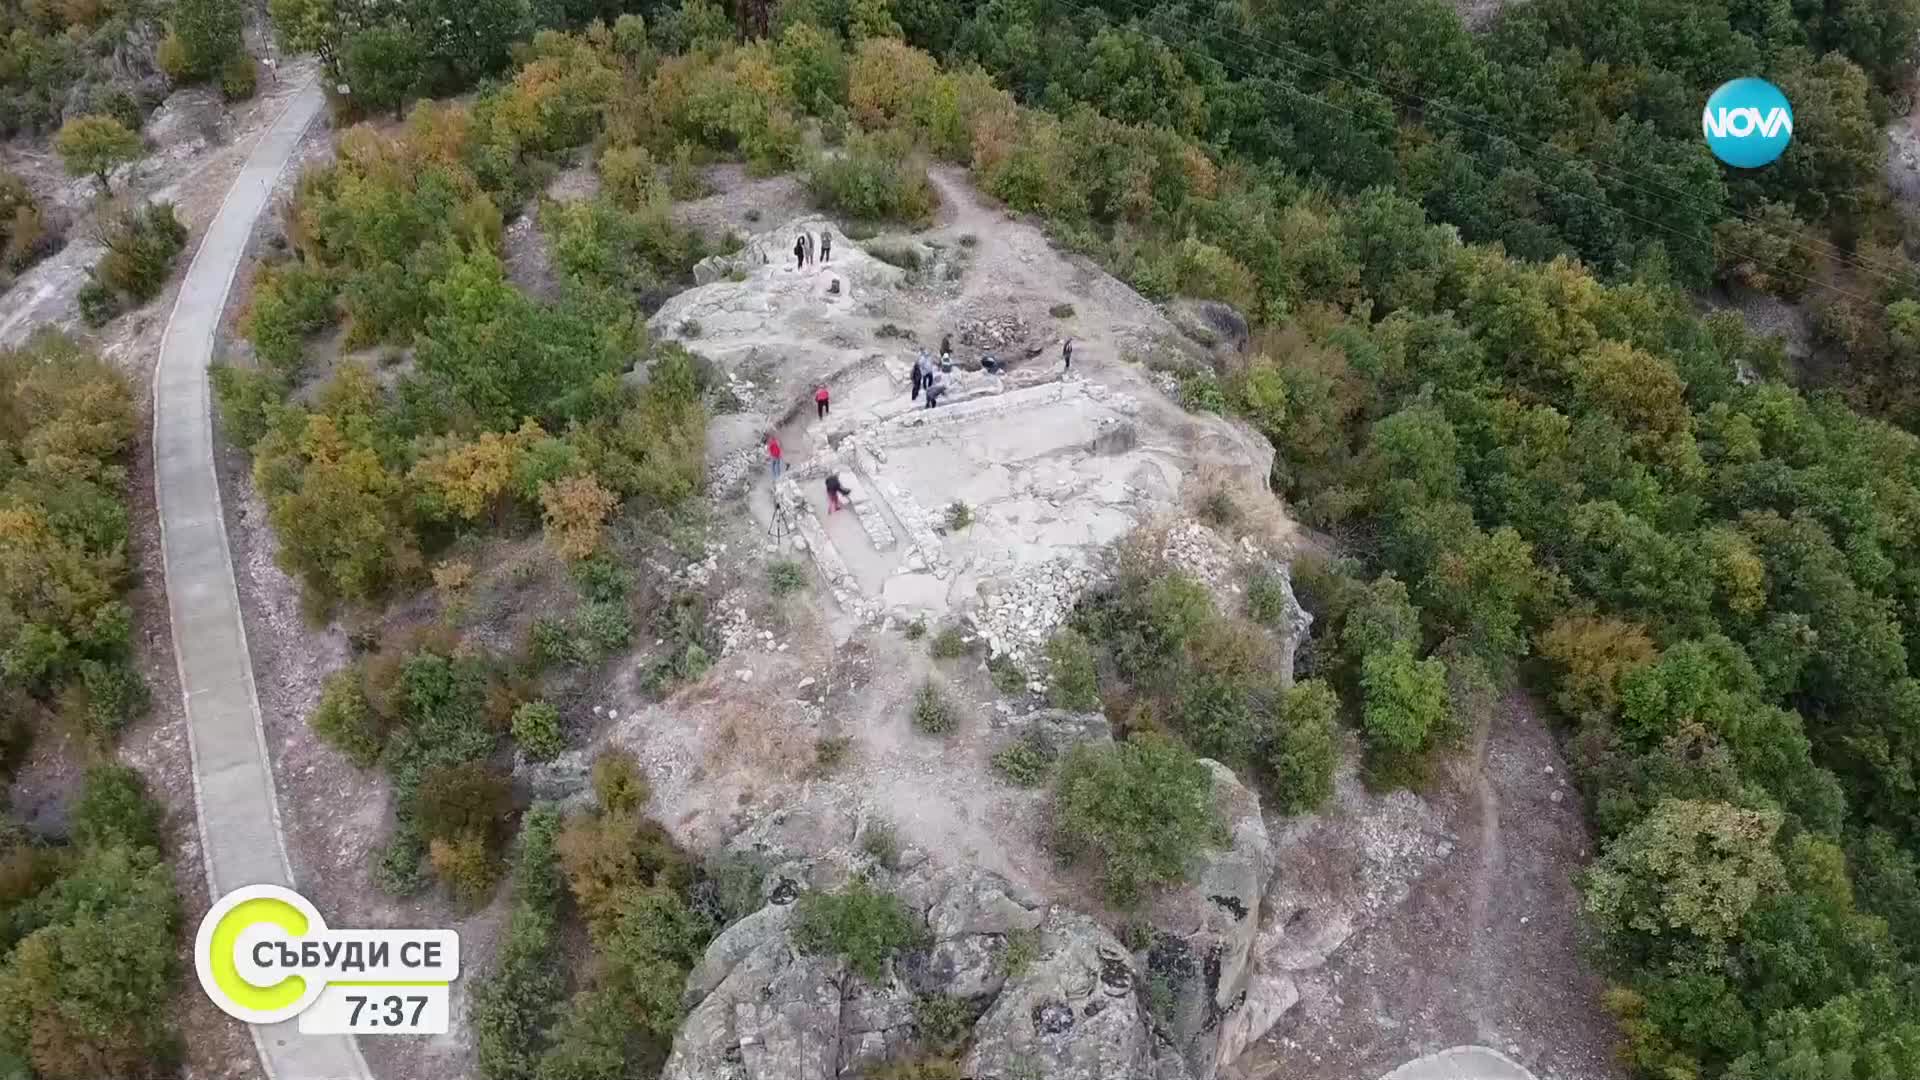 След 20 години разкопки: Завърши проучването на Светилището на Орфей при Татул